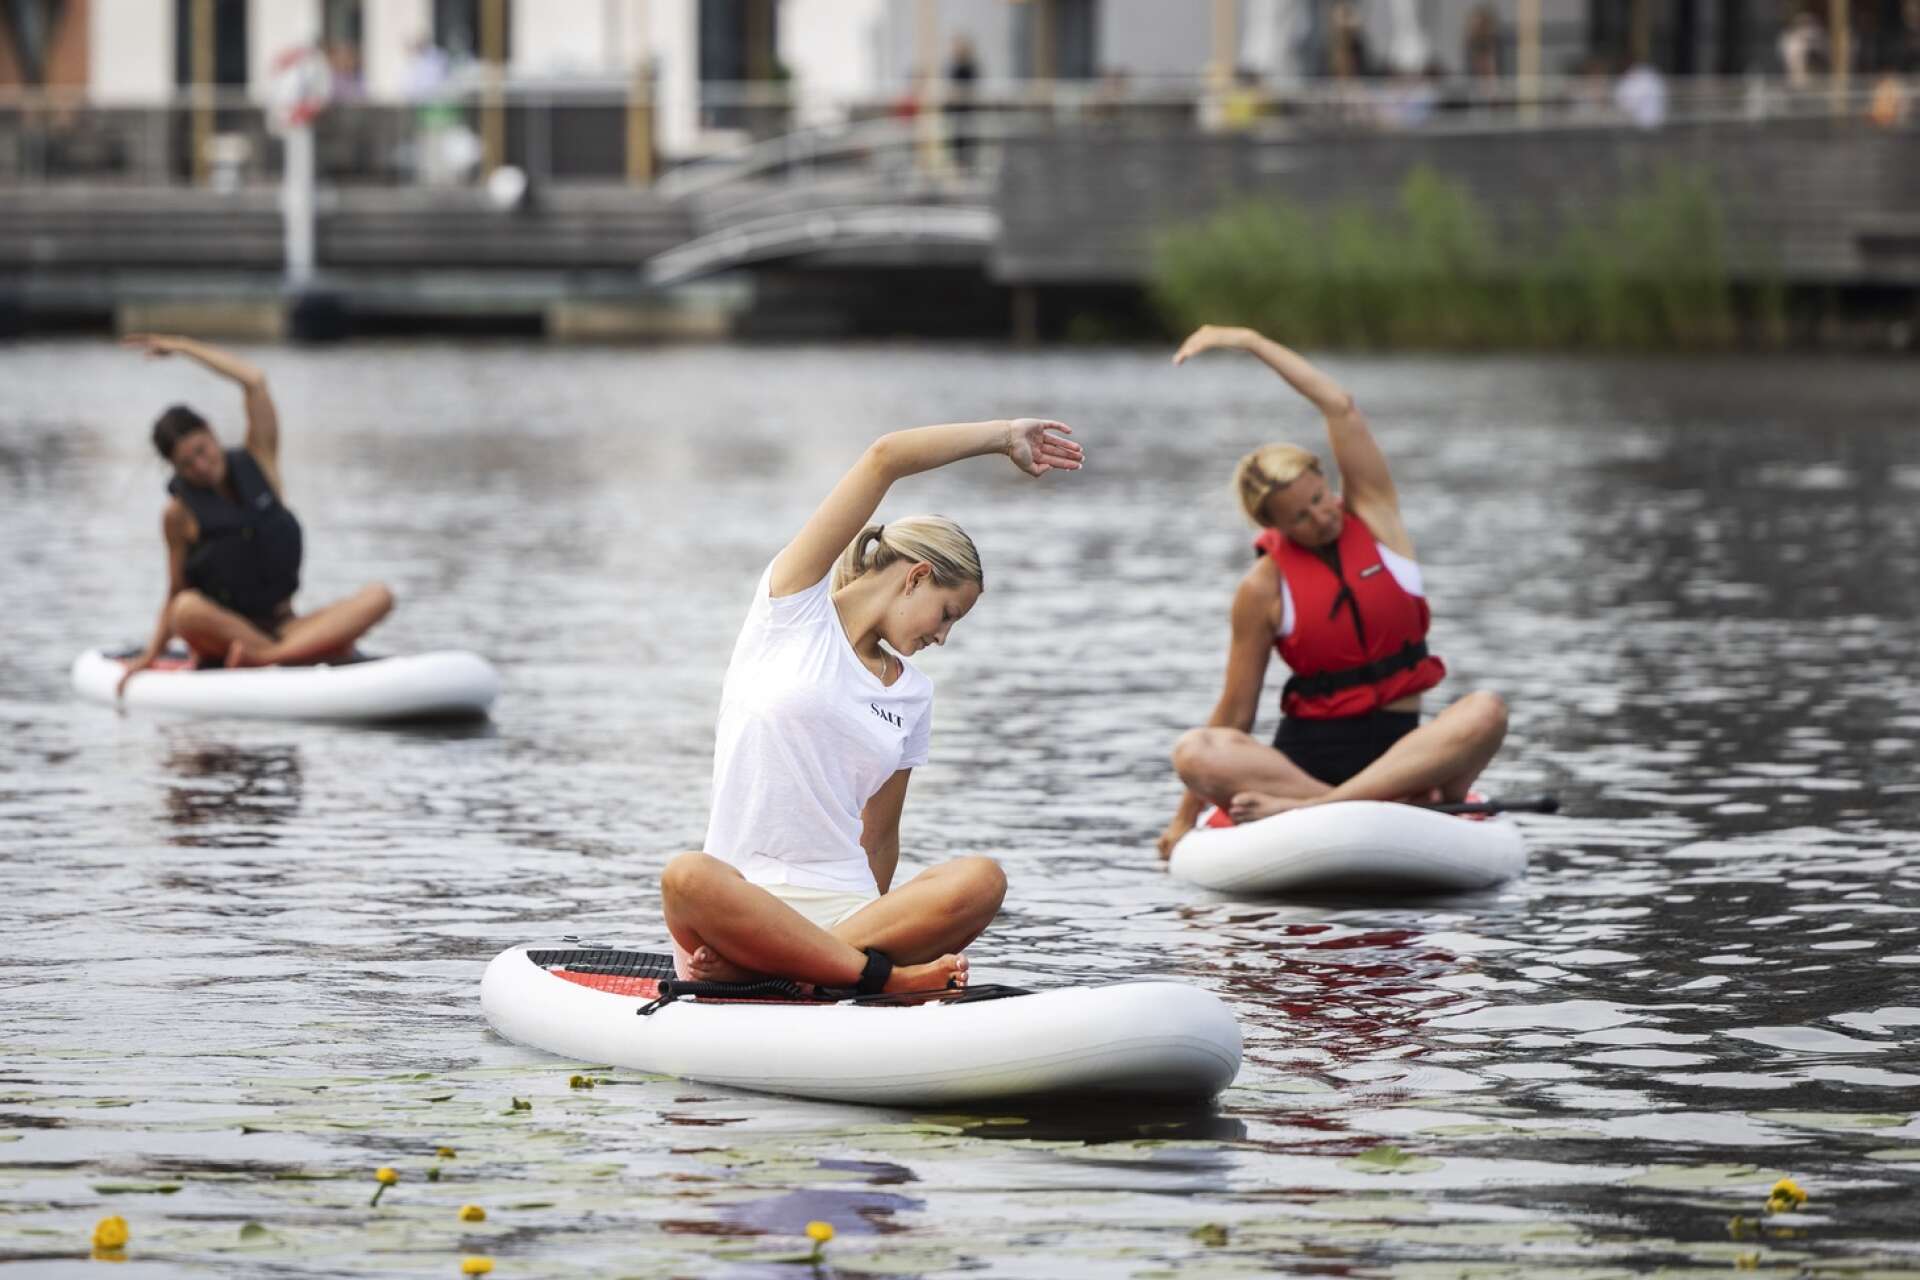 Från vänster: Maria Eriksson, Michelle Träff och Sara Olsson stretchar till vattnets rörelse.